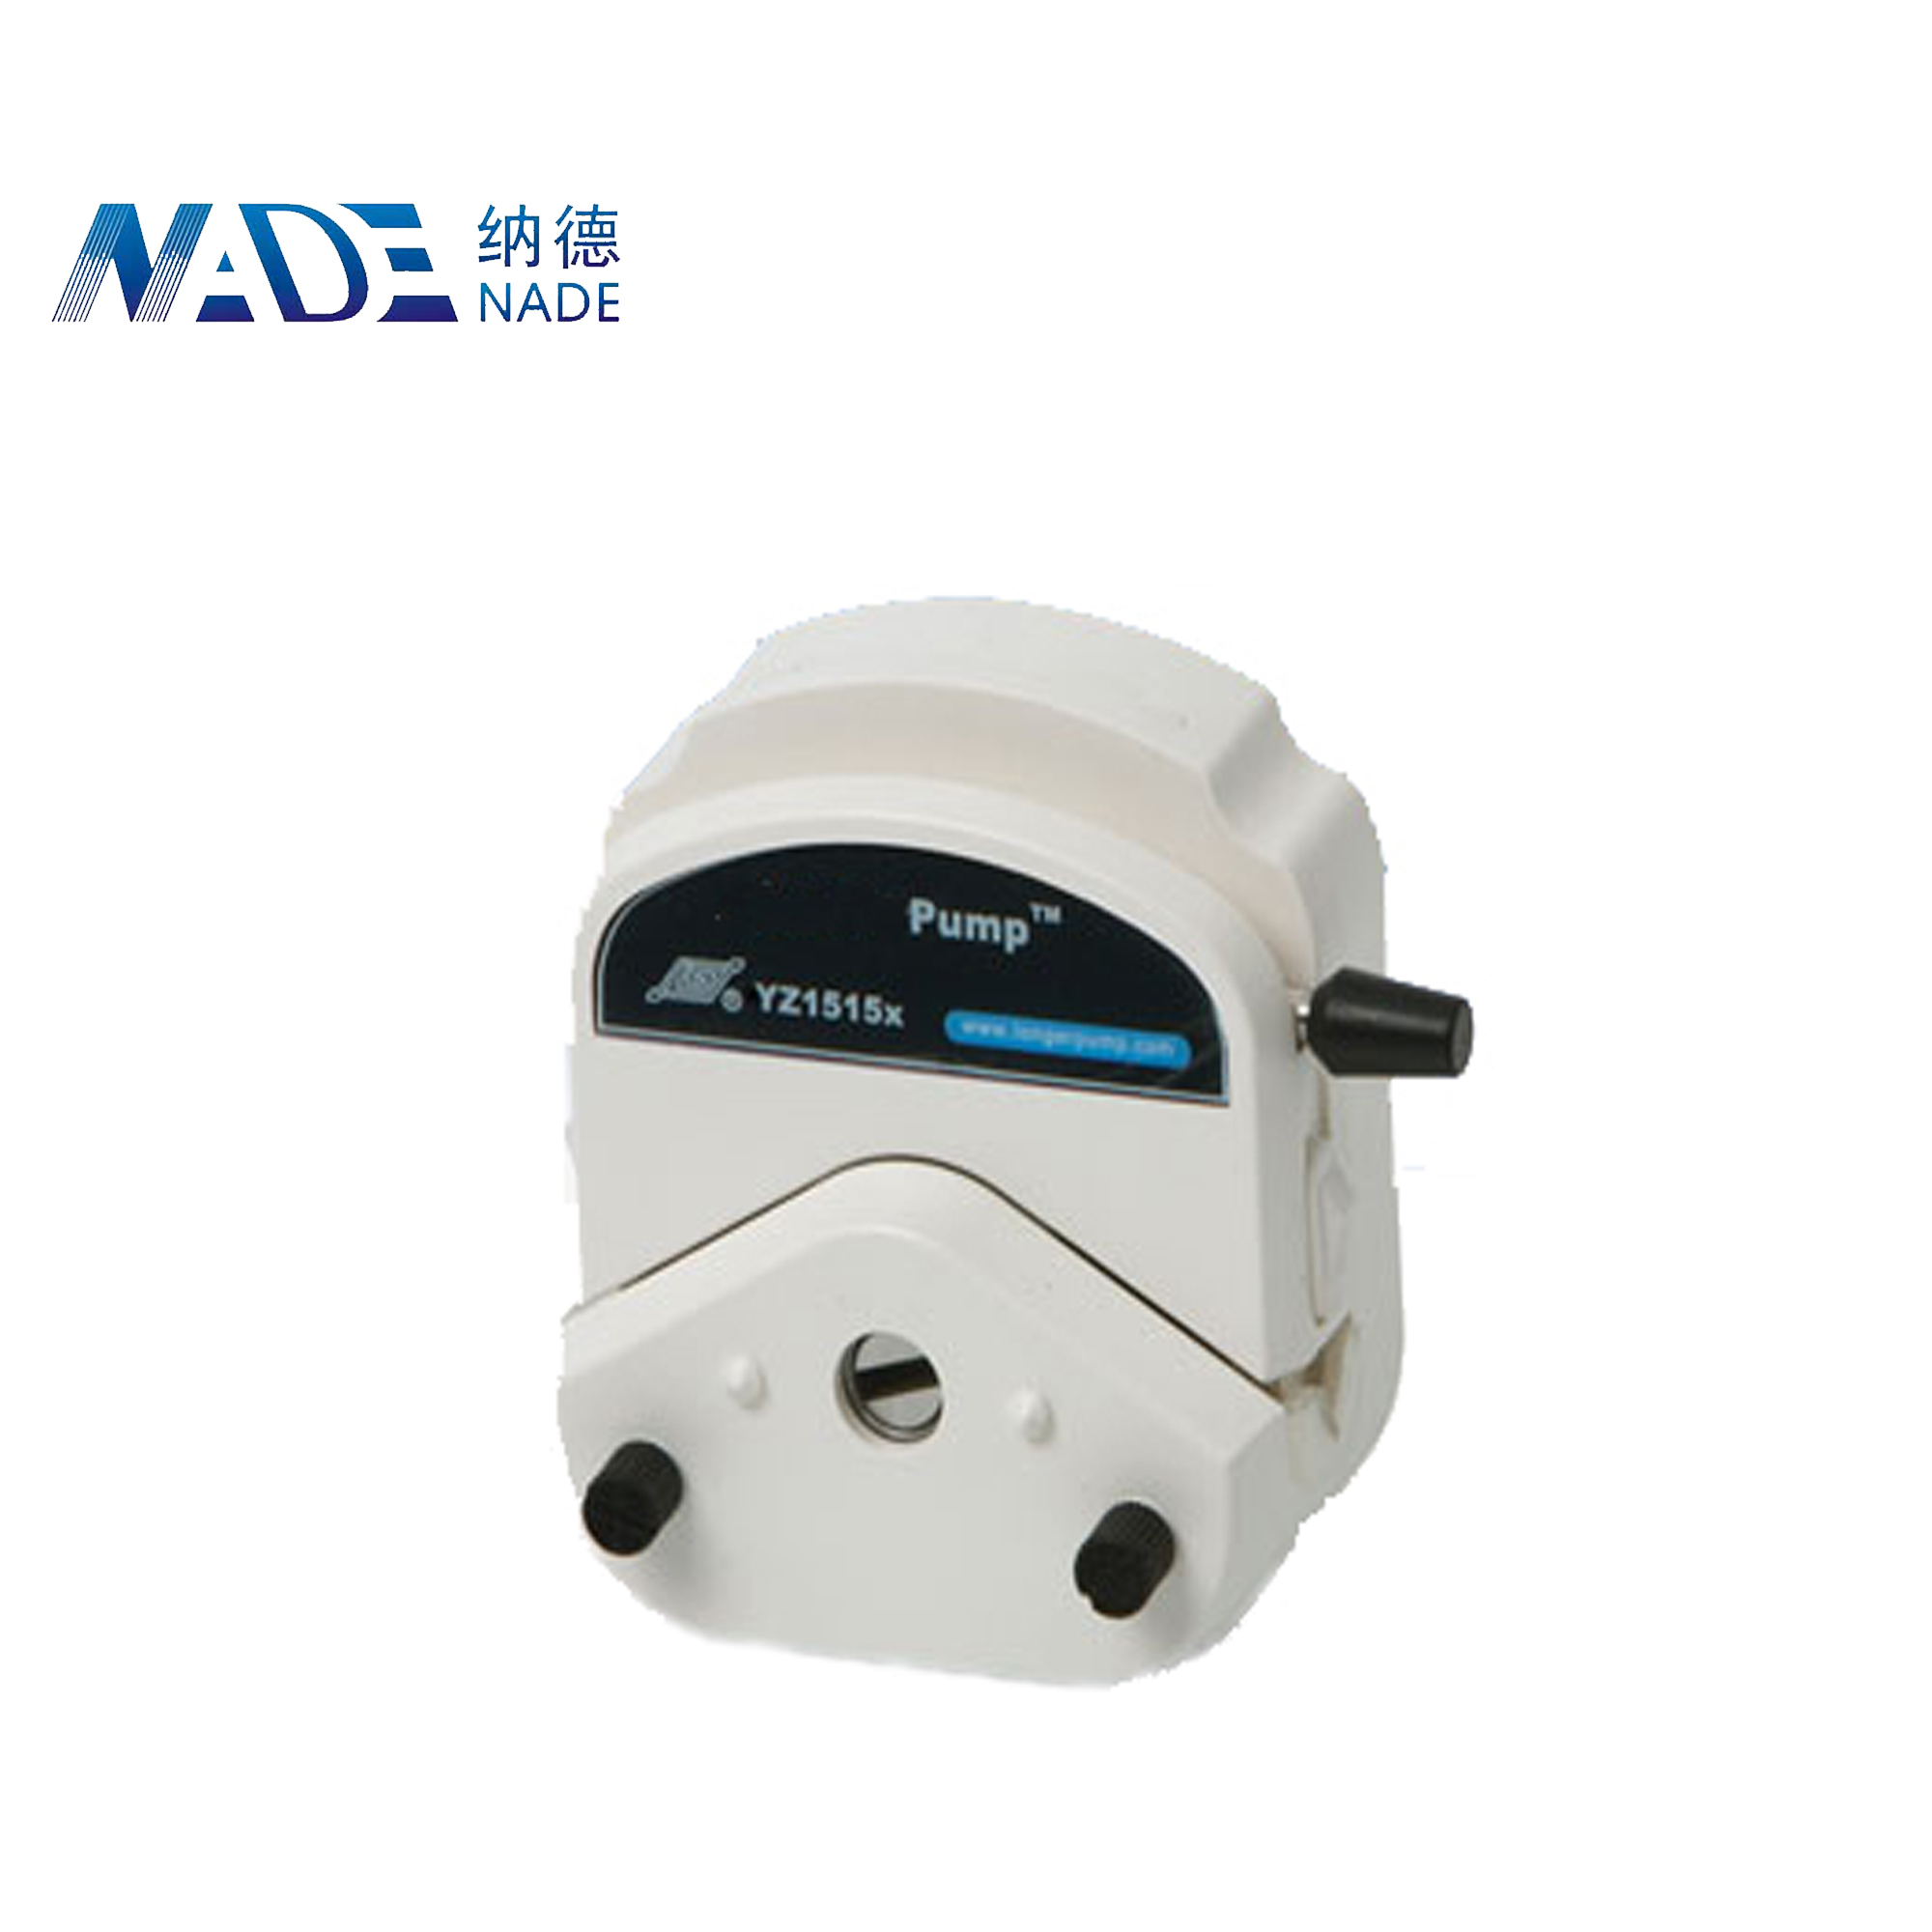 NADE G100-1J Industrial Peristaltic Pump(0-1500ml/min)